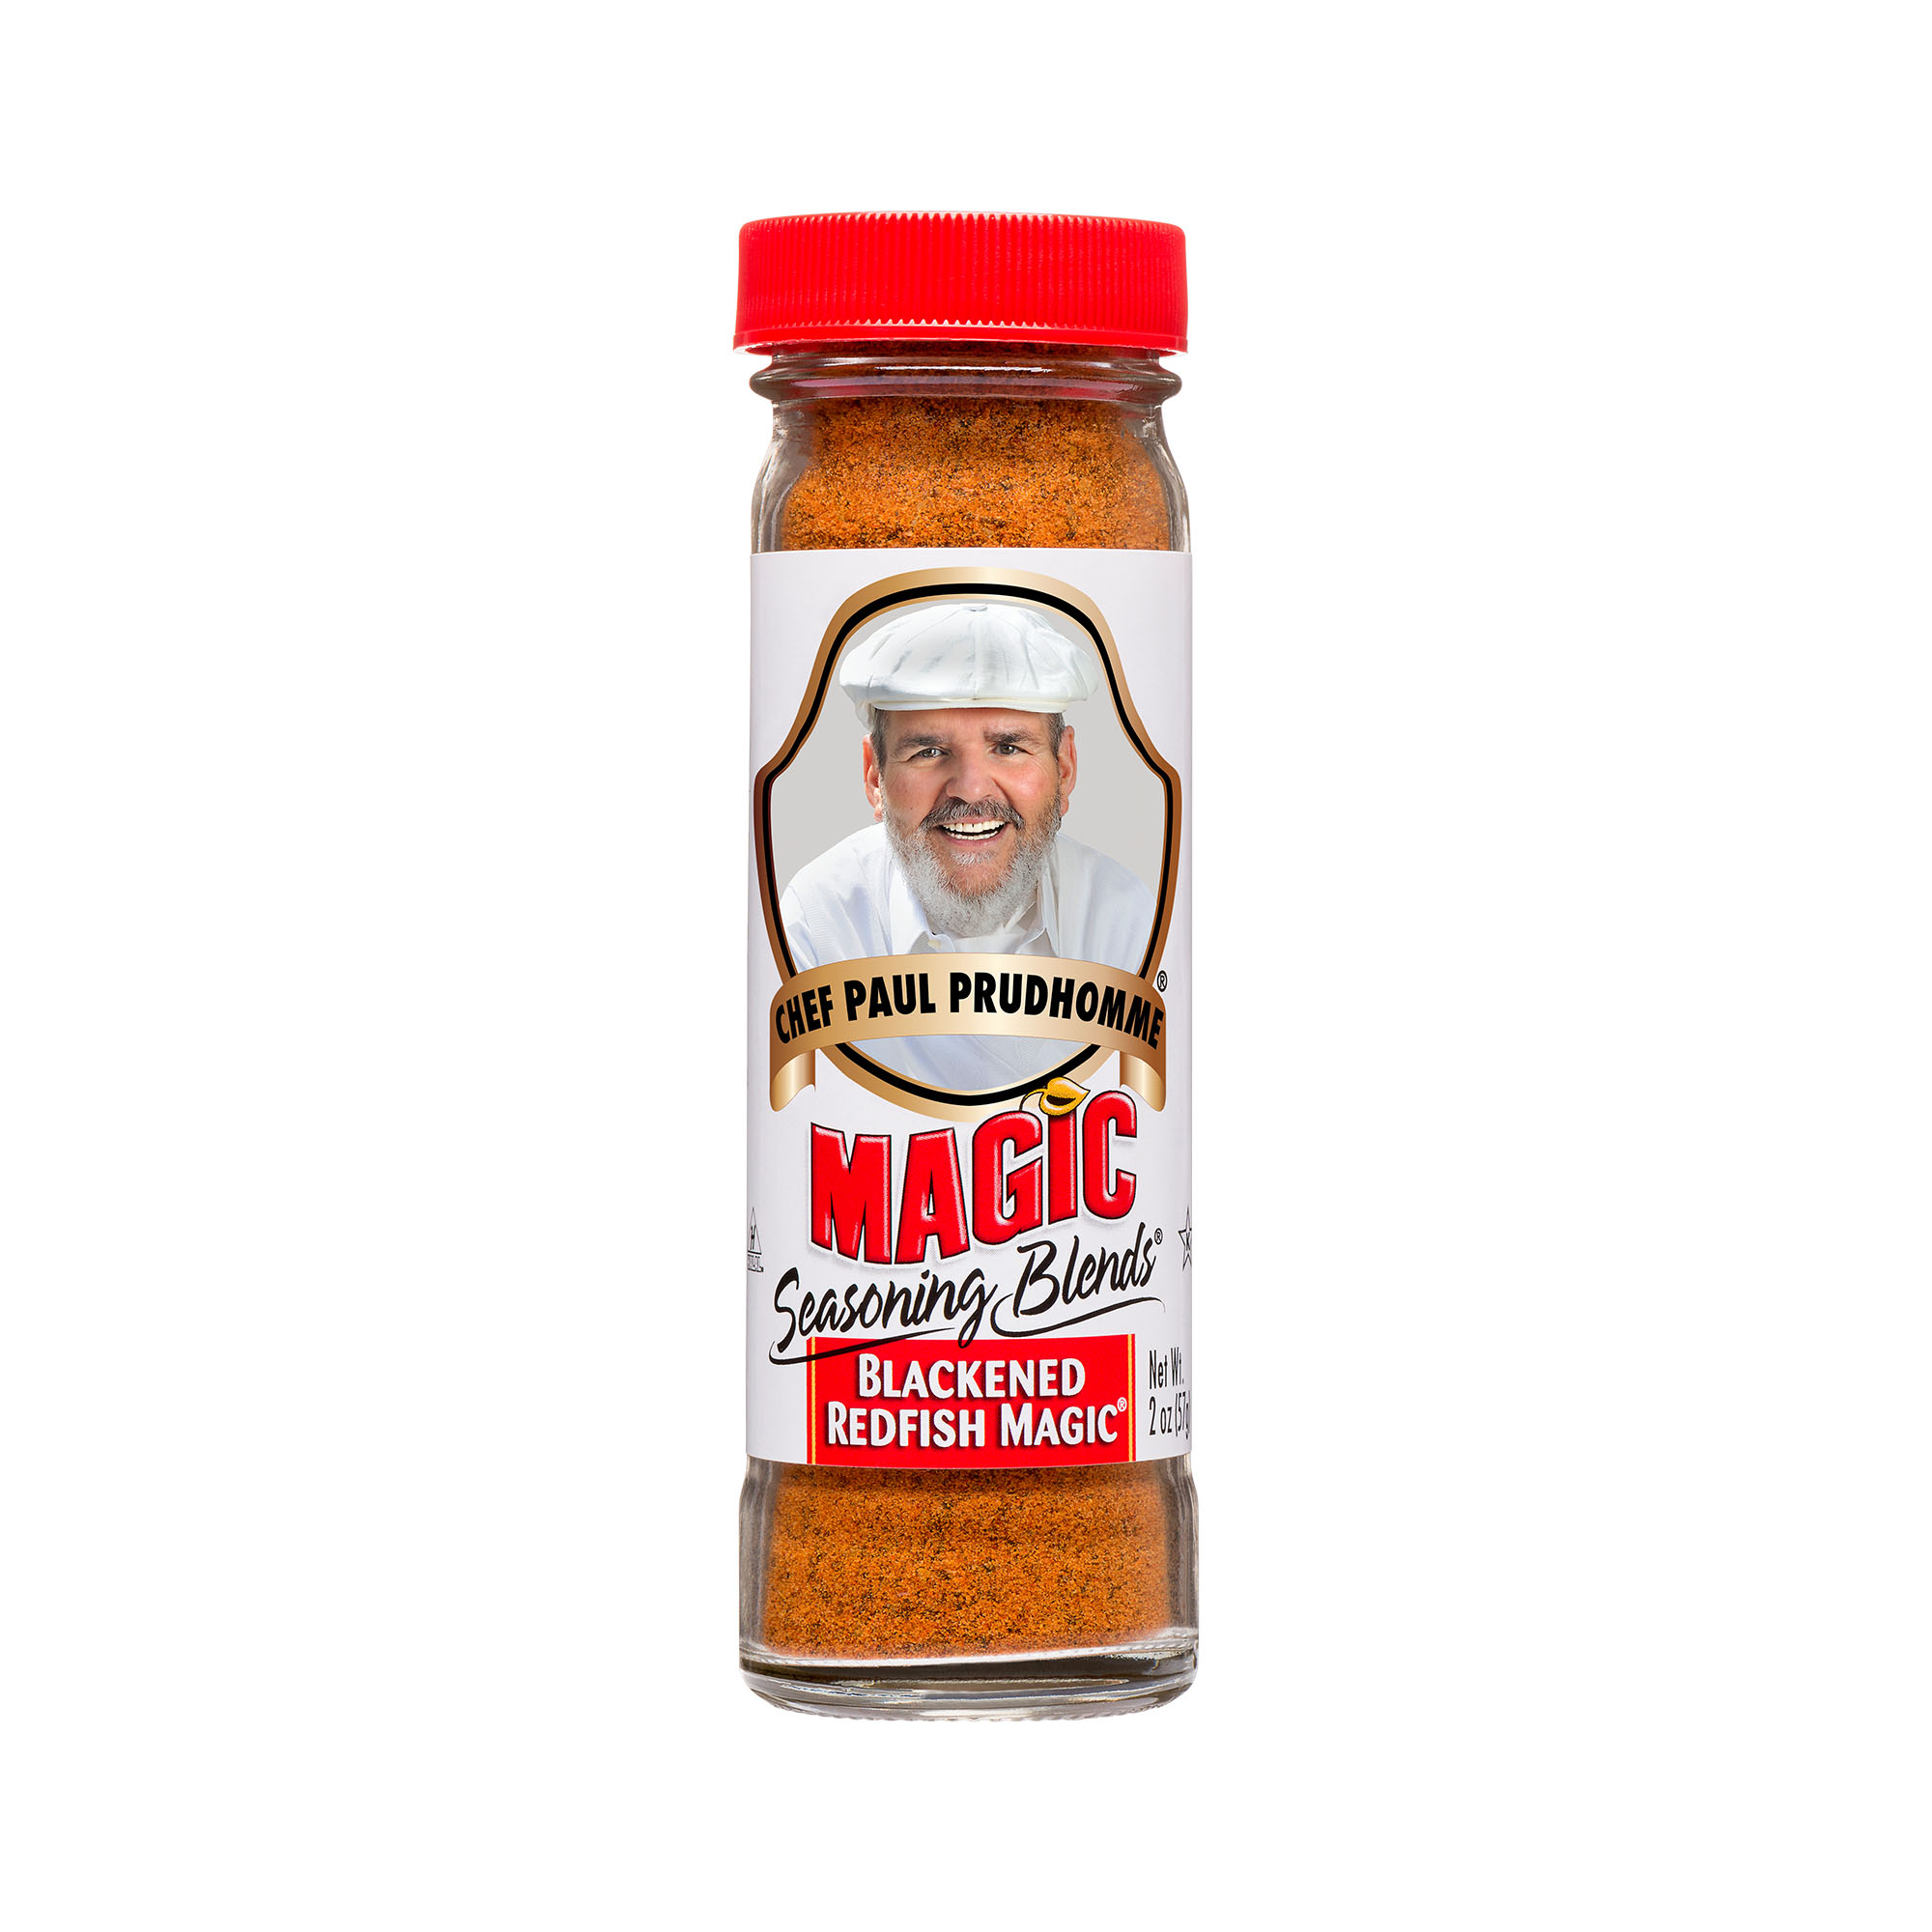 Black Magic Cajun Blackening Seasoning and Dry Rub